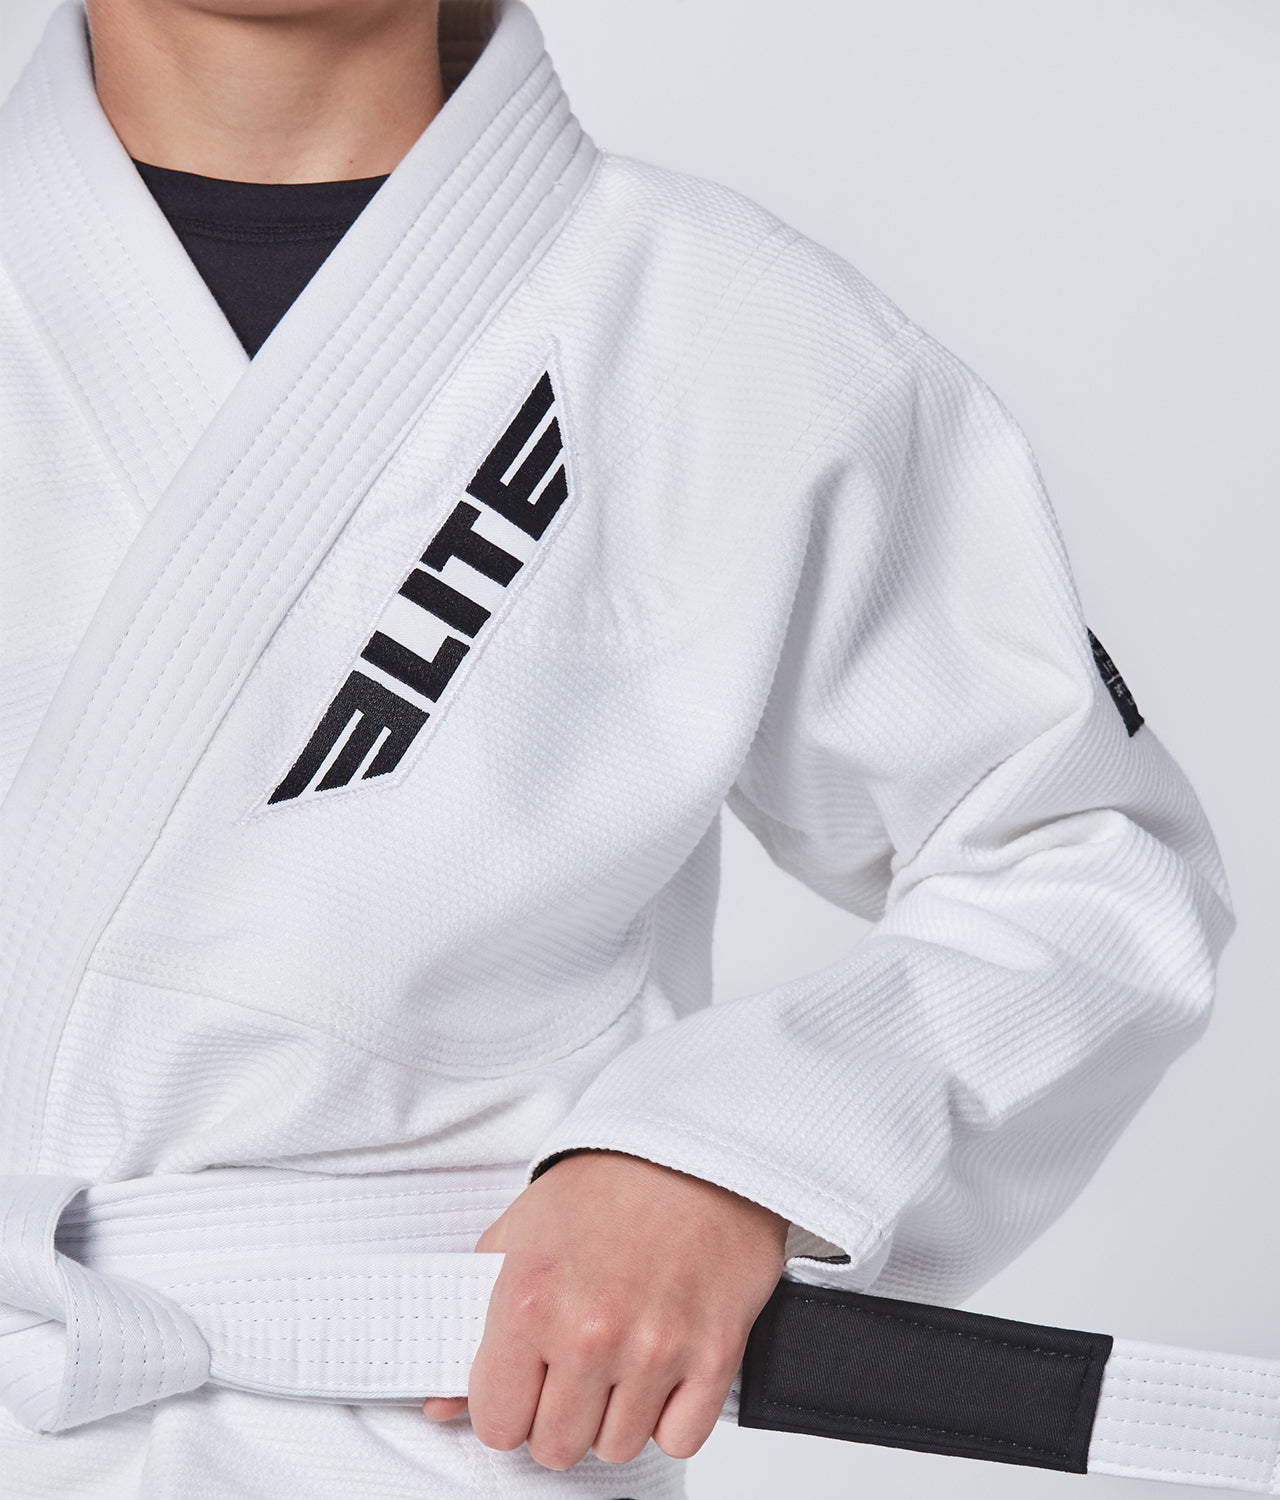 Elite Sports Kids' Core White Brazilian Jiu Jitsu BJJ Gi Closeup View